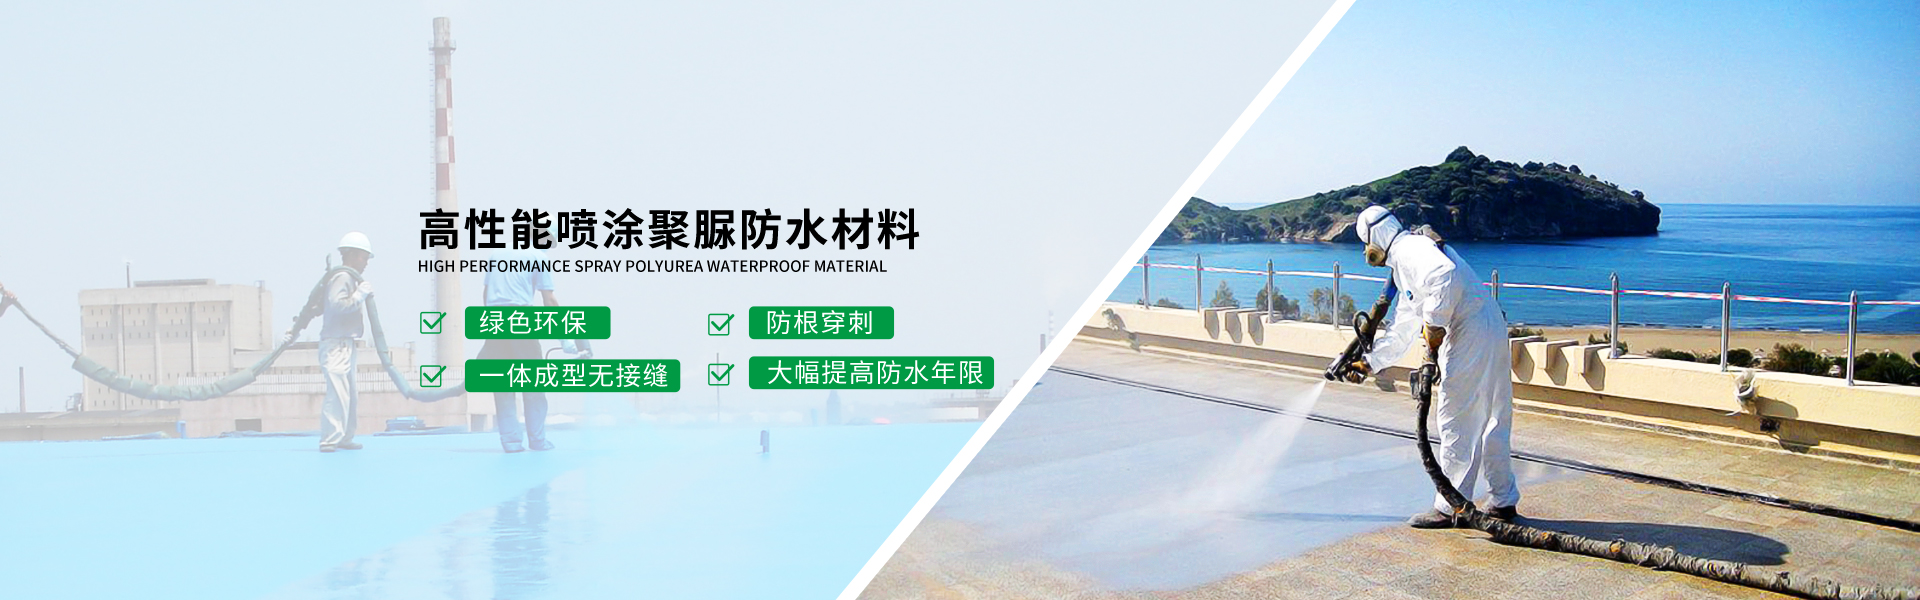 青島海(hai)洋新材料主營聚(ju)　防水,防水材料等(deng)產品